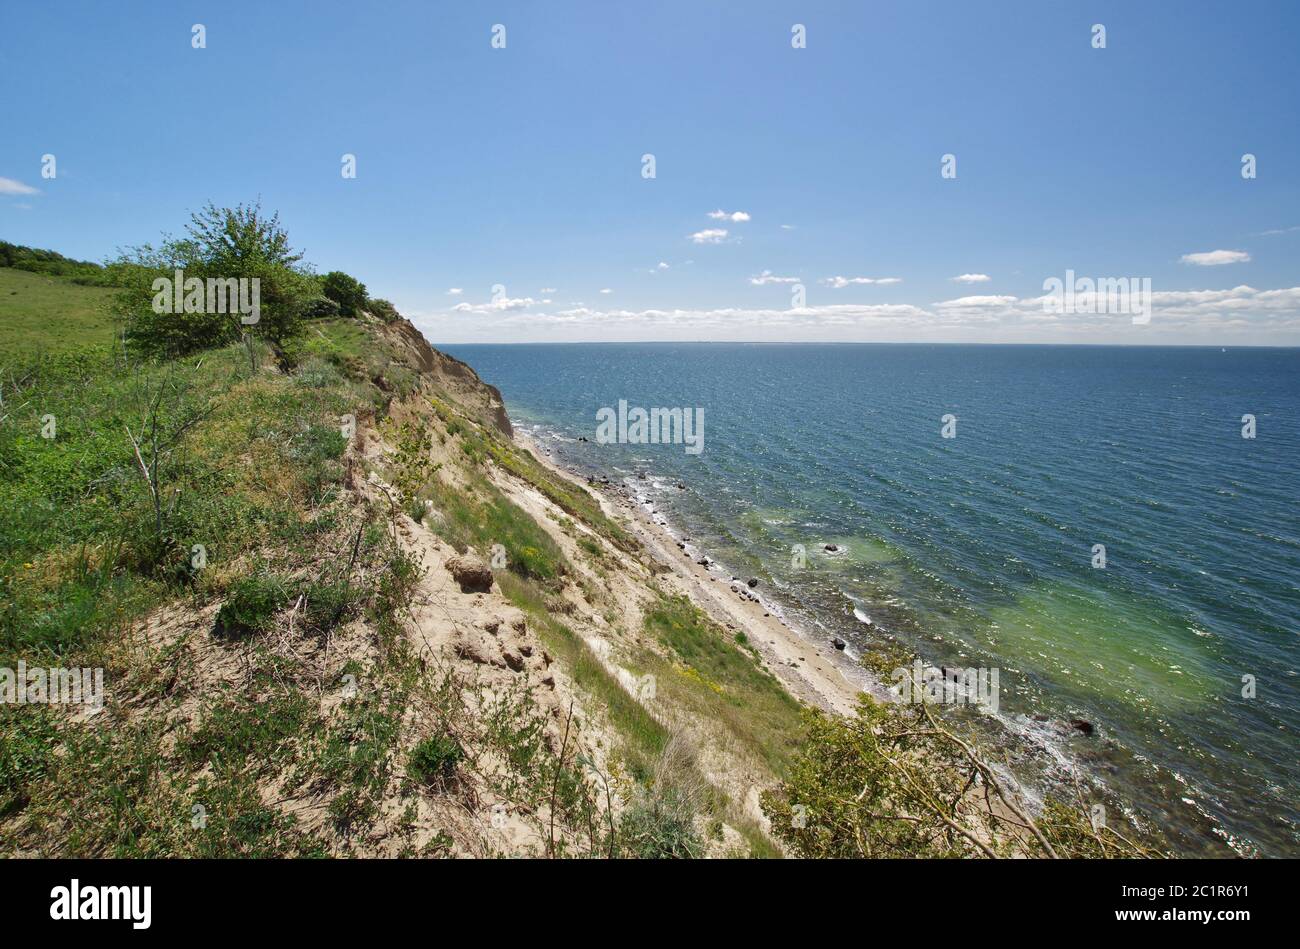 Vue depuis la falaise sur la mer Baltique, Nonnenloch, GroÃŸ Zicker, Île de Rügen, Mönchgut, Vorpommern-Rügen, Mecklenburg Vorpommern, Allemagne, Europe de l'Ouest Banque D'Images